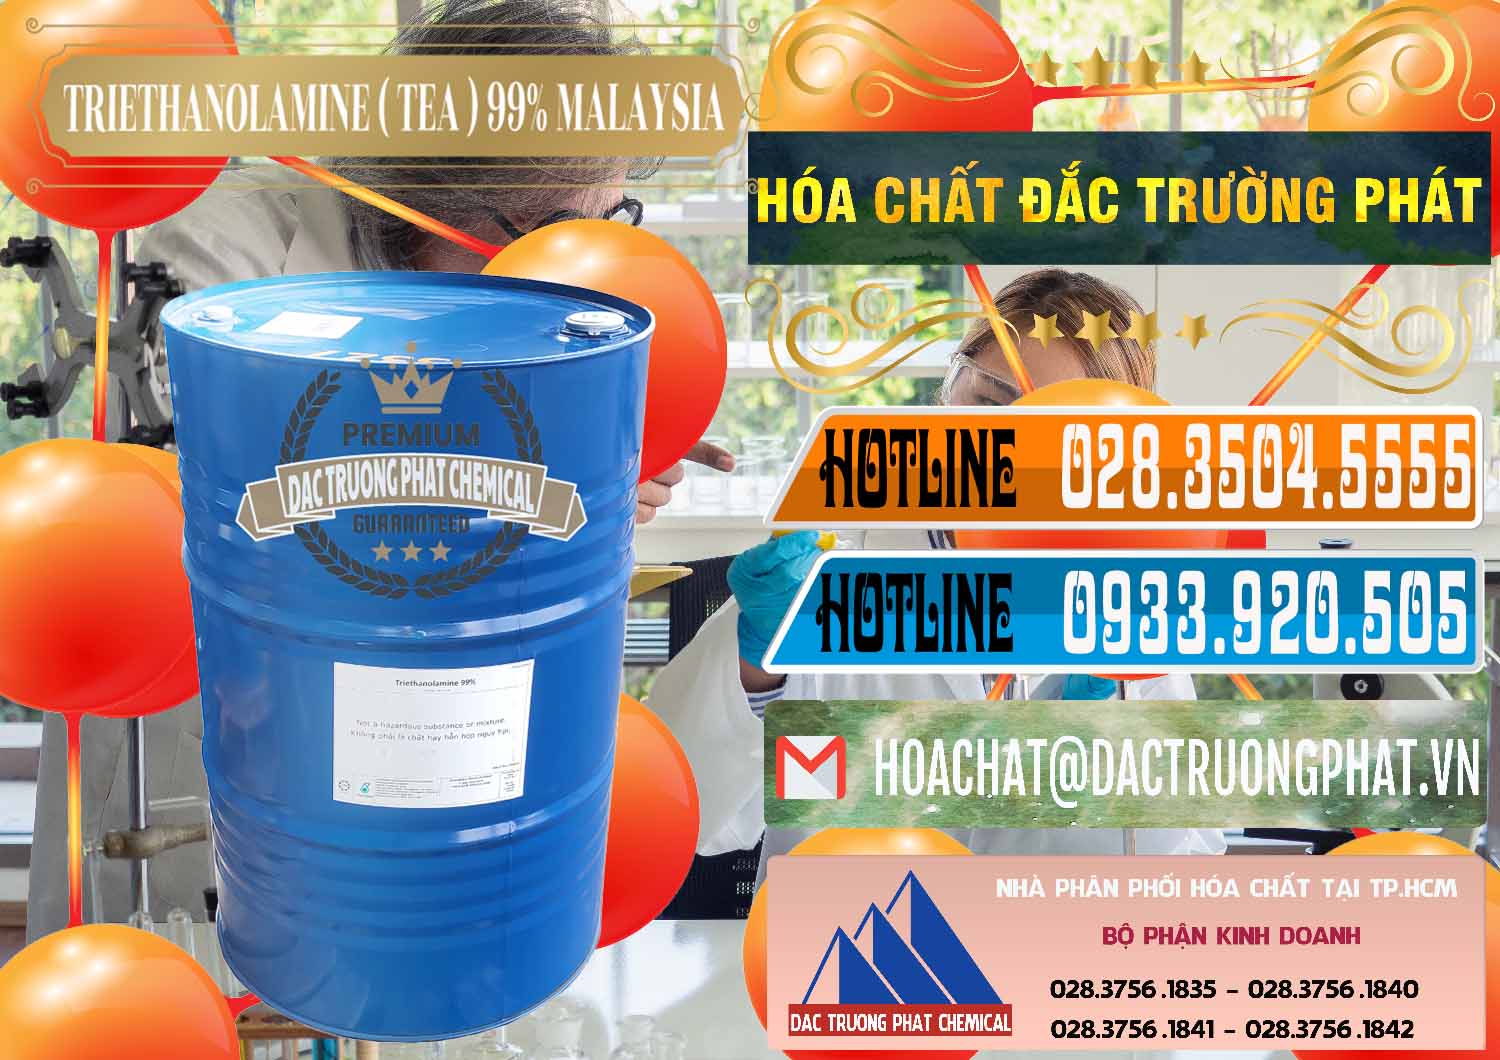 Bán & phân phối TEA - Triethanolamine 99% Mã Lai Malaysia - 0323 - Công ty chuyên kinh doanh - phân phối hóa chất tại TP.HCM - stmp.net